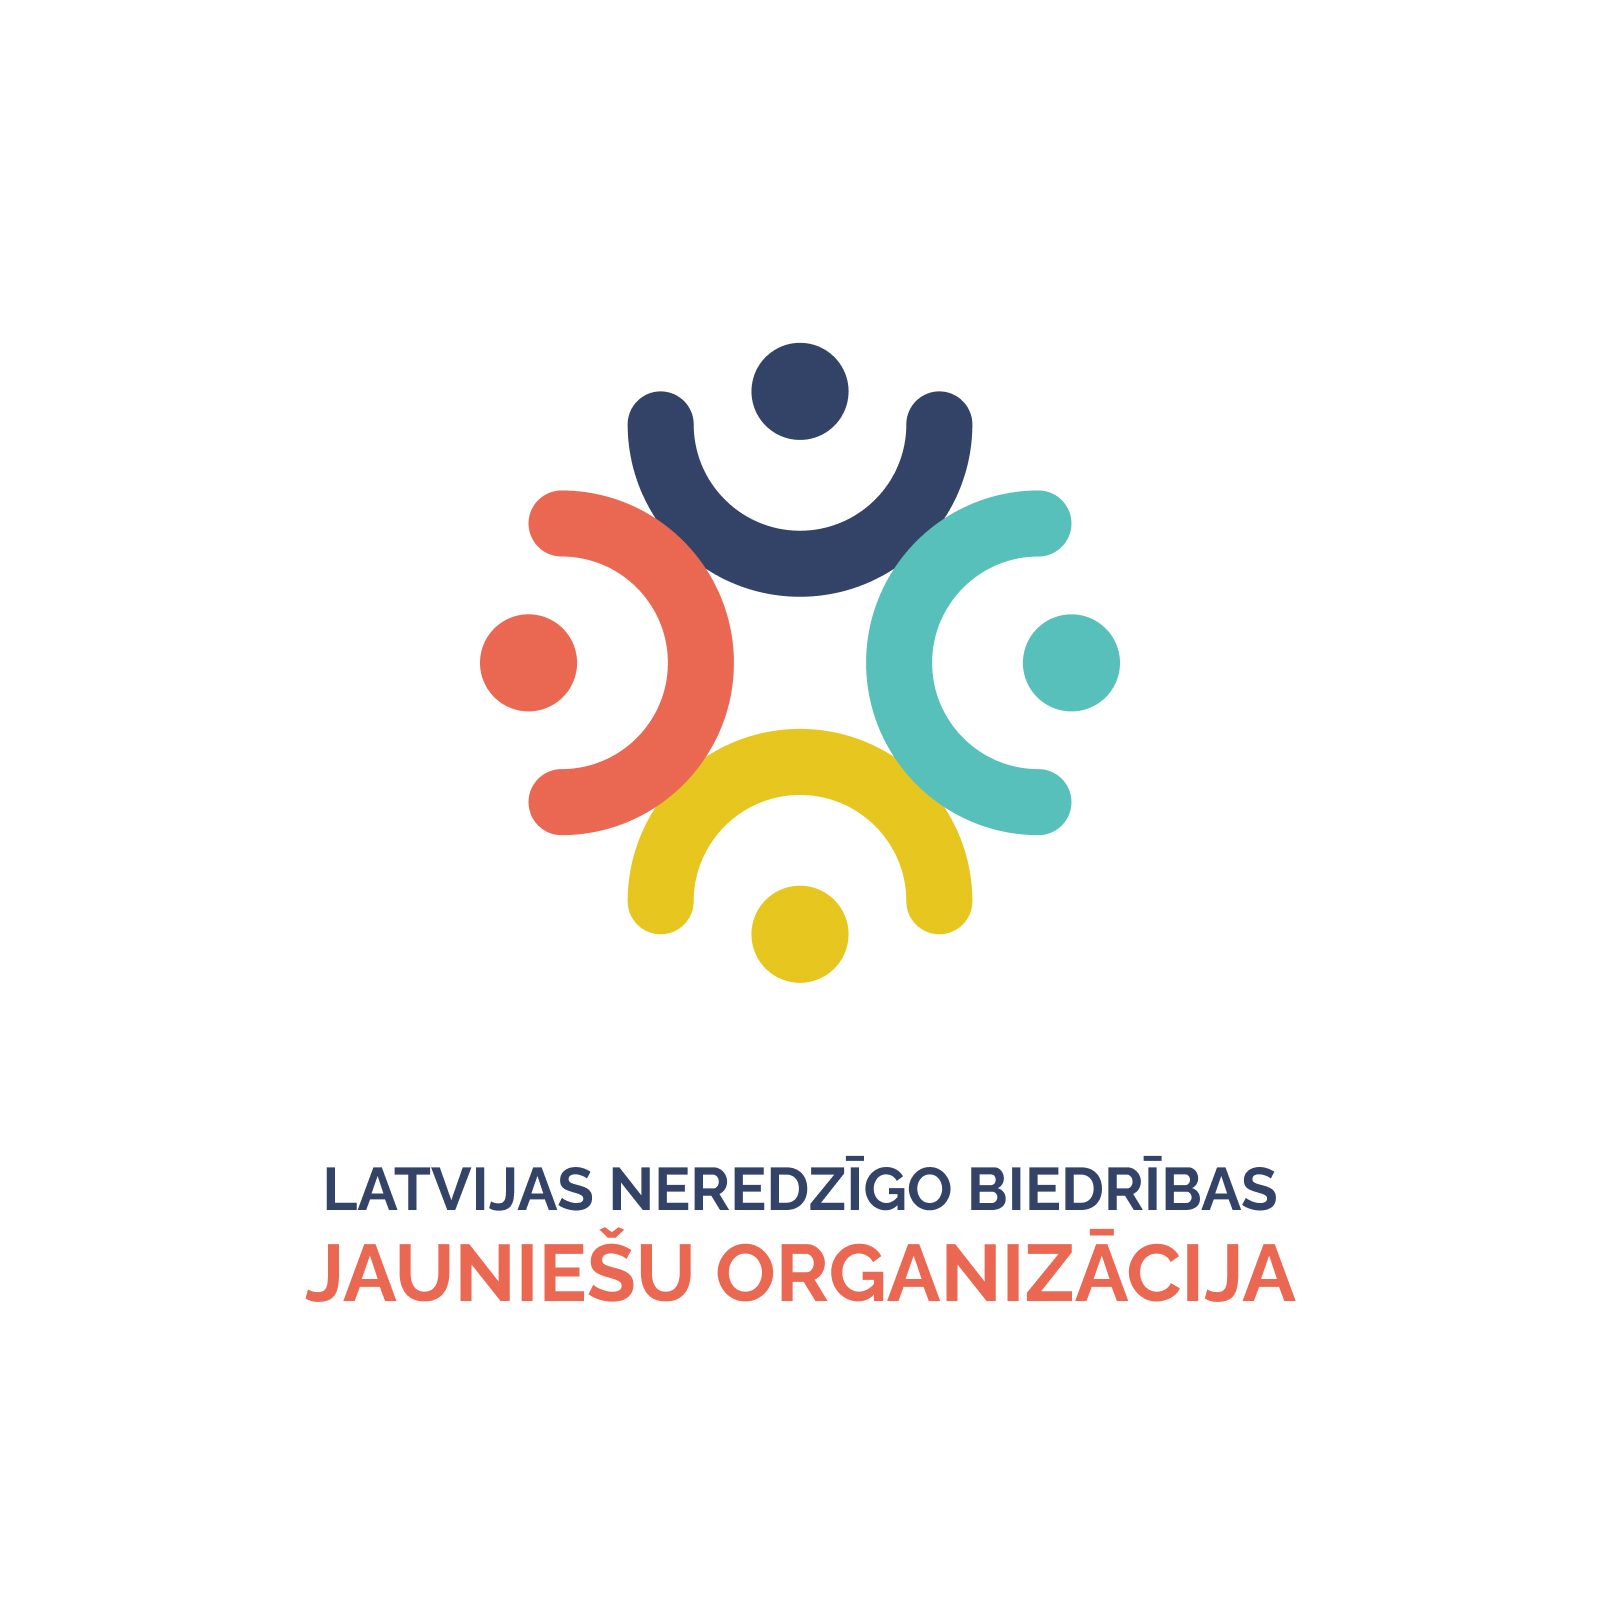 LNB jauniešu organizācijas logo 